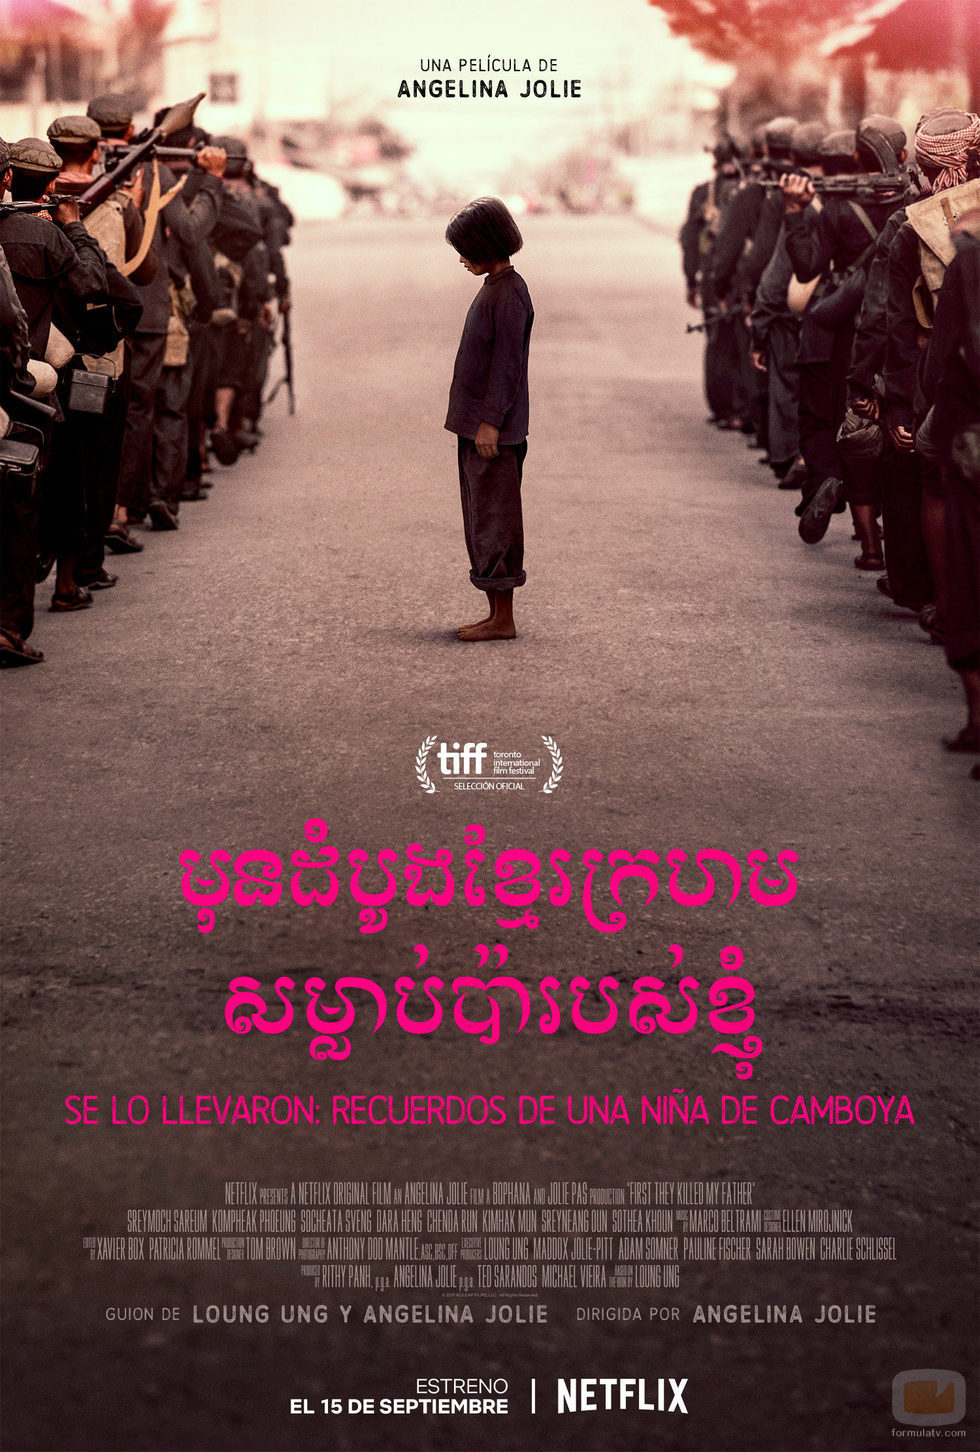 Póster de la película "Se lo llevaron: recuerdos de una niña de Camboya" de Netflix